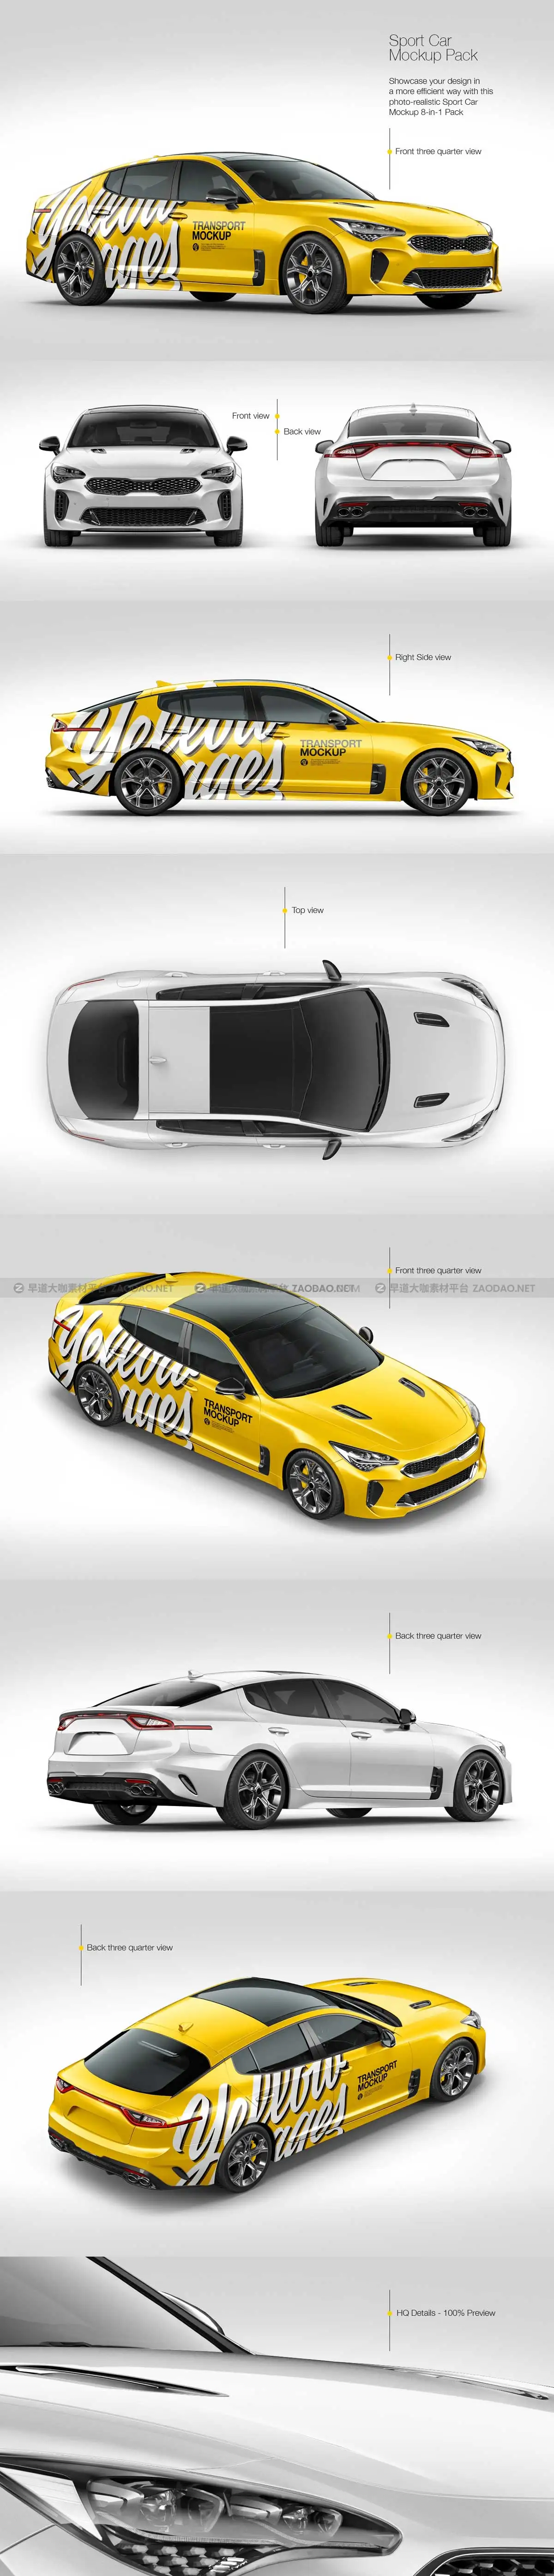 8款起亚运动型跑车小汽车身图案设计贴图PS智能展示样机模板 Sport Car Mockup Pack插图